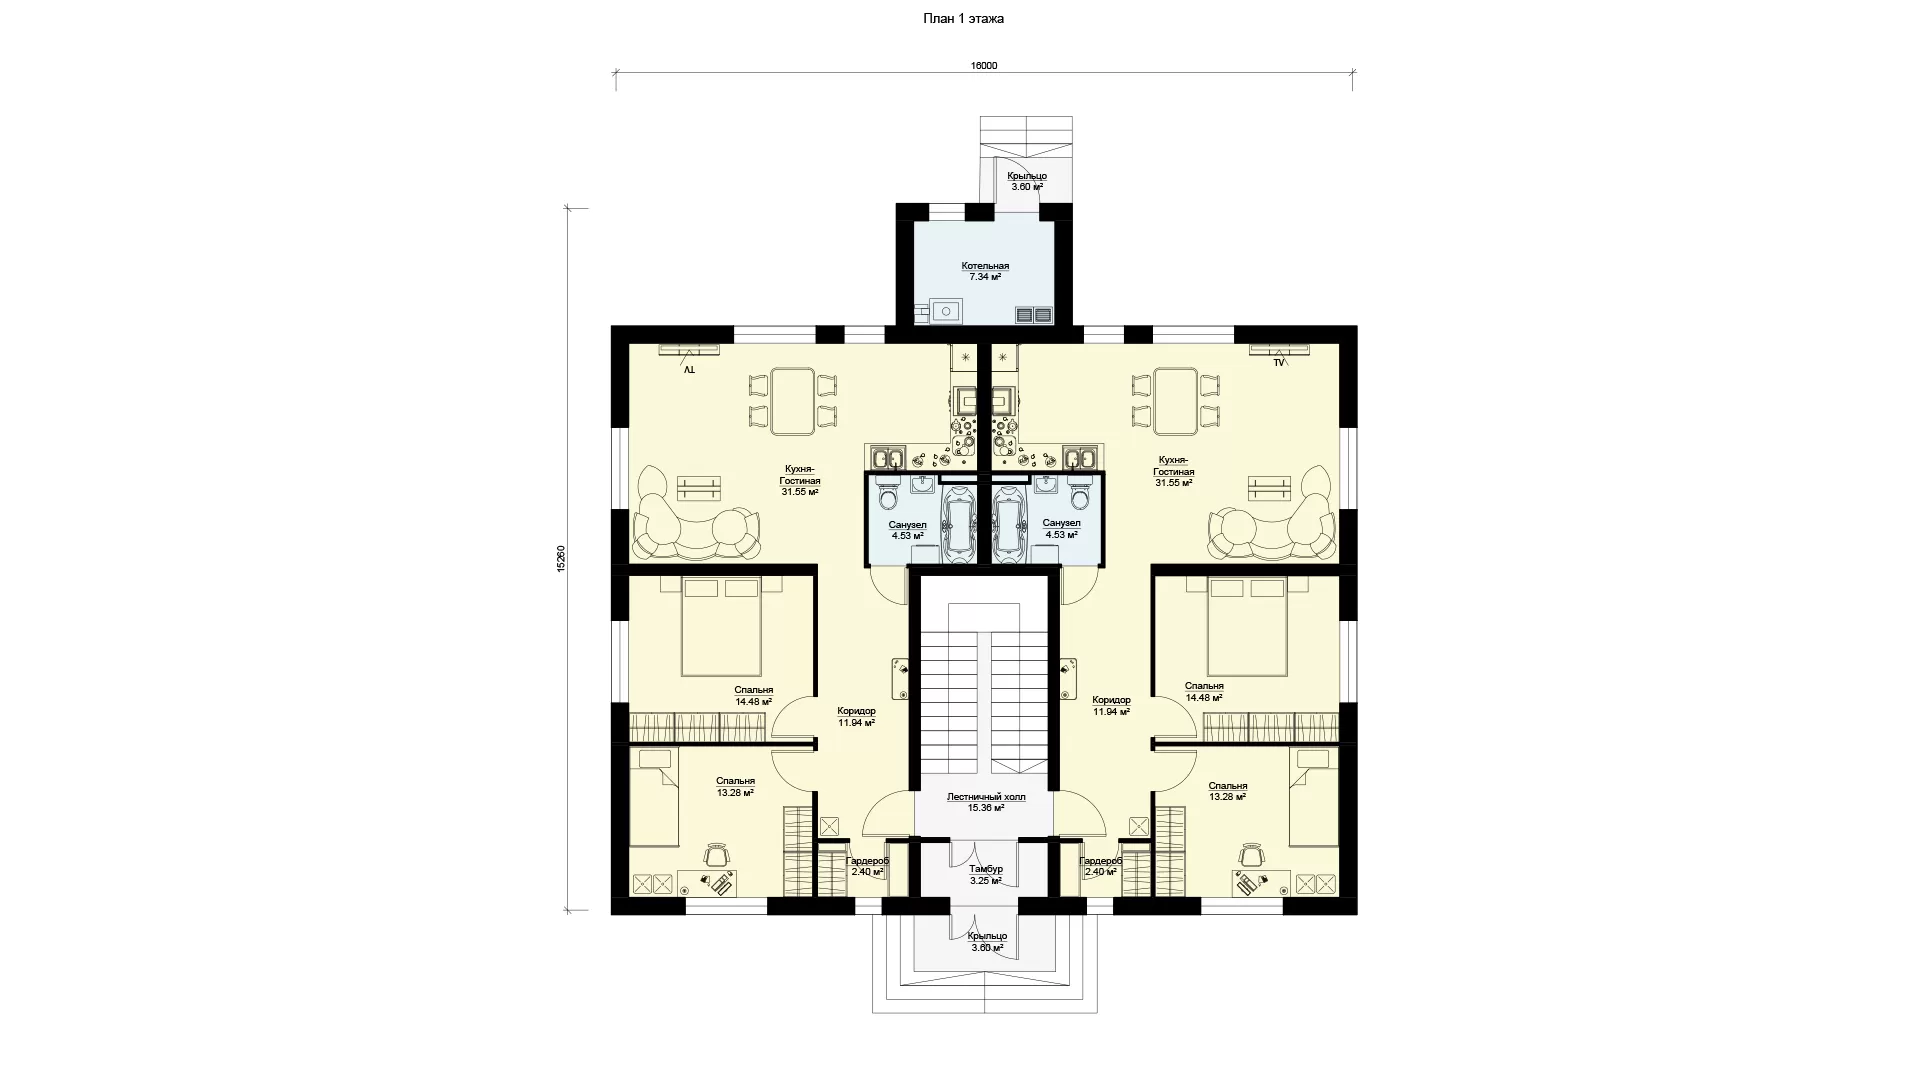 Четырехквартирный дом на 4 семьи - планировка первого этажа (МС-346)